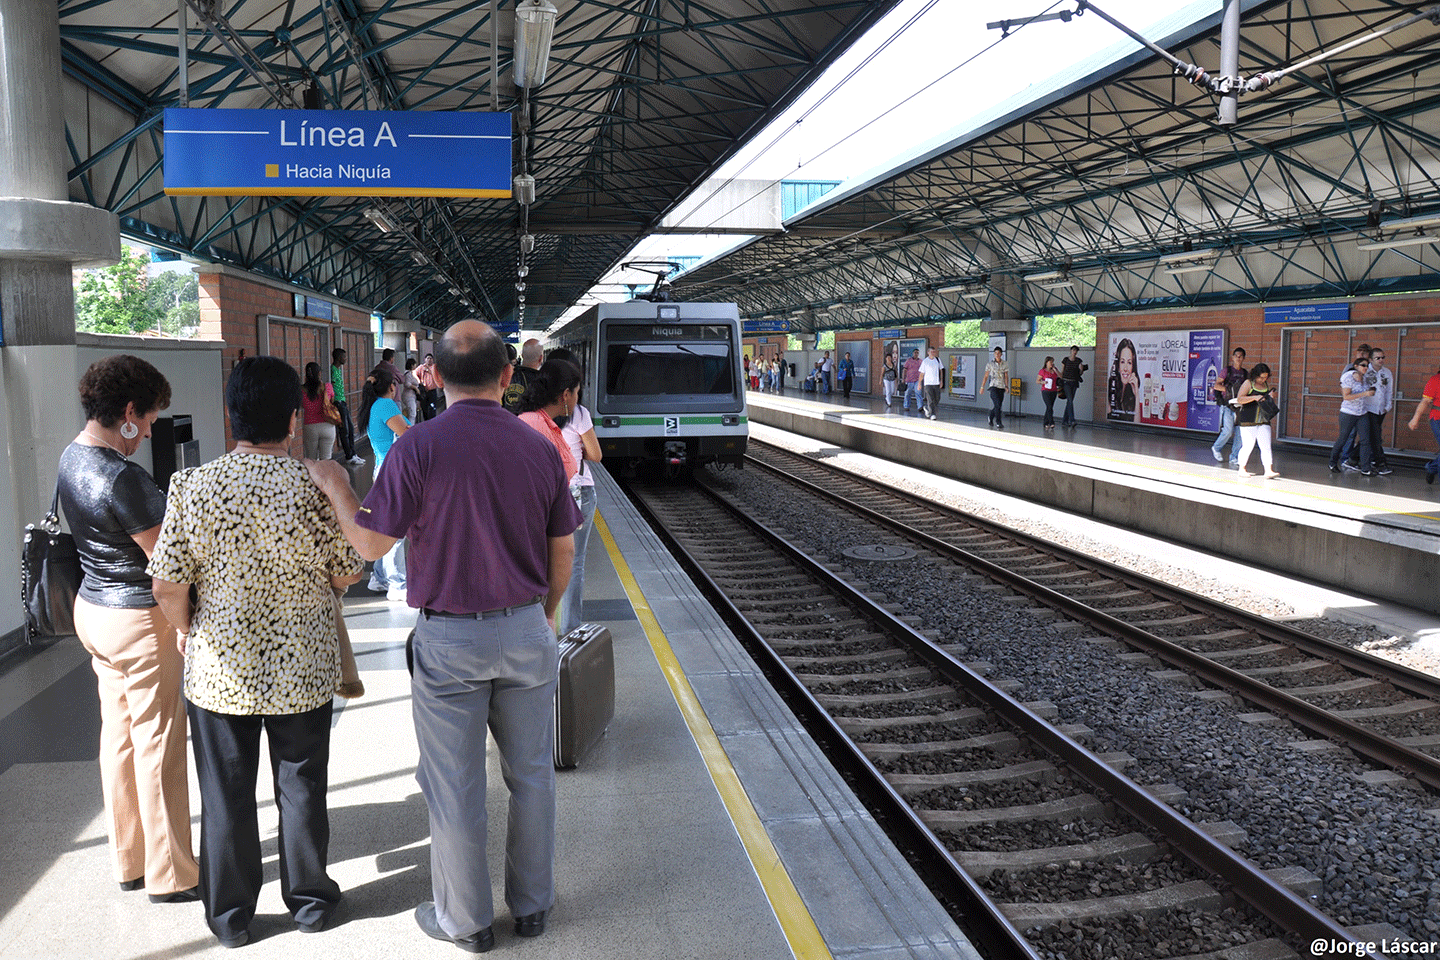 Medellín Transportation System